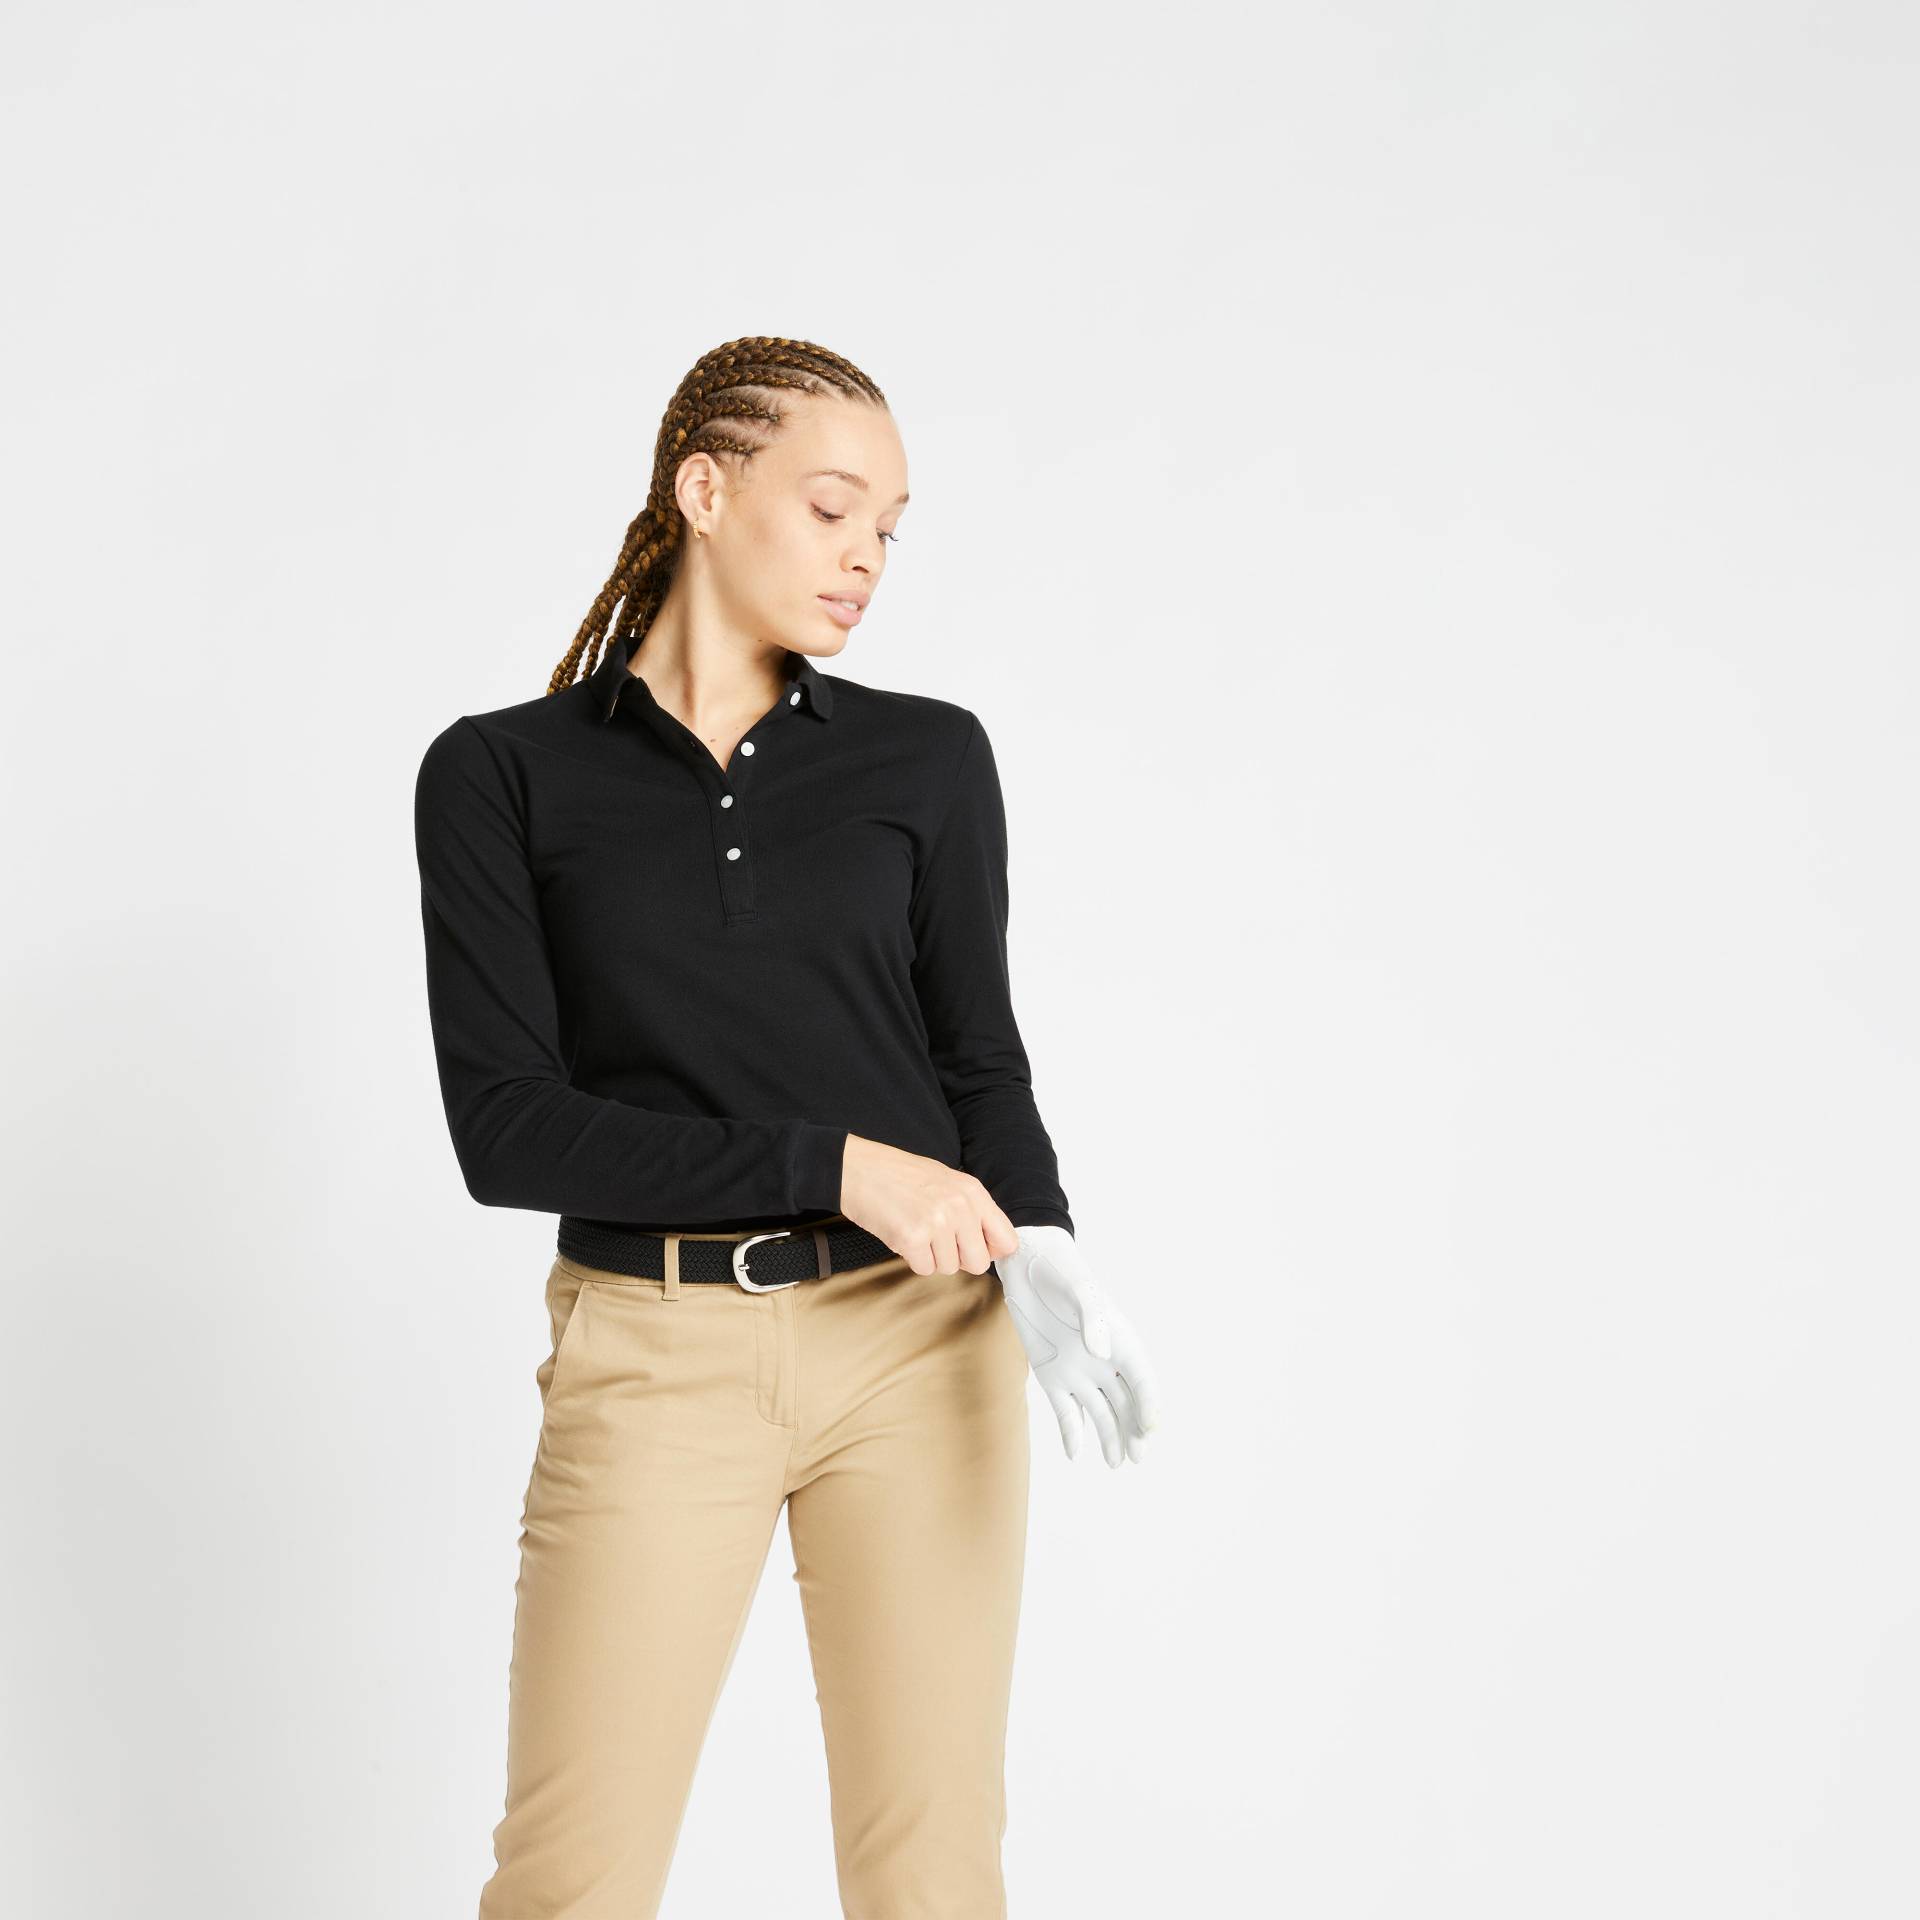 Damen Poloshirt langarm - MW500 schwarz von INESIS